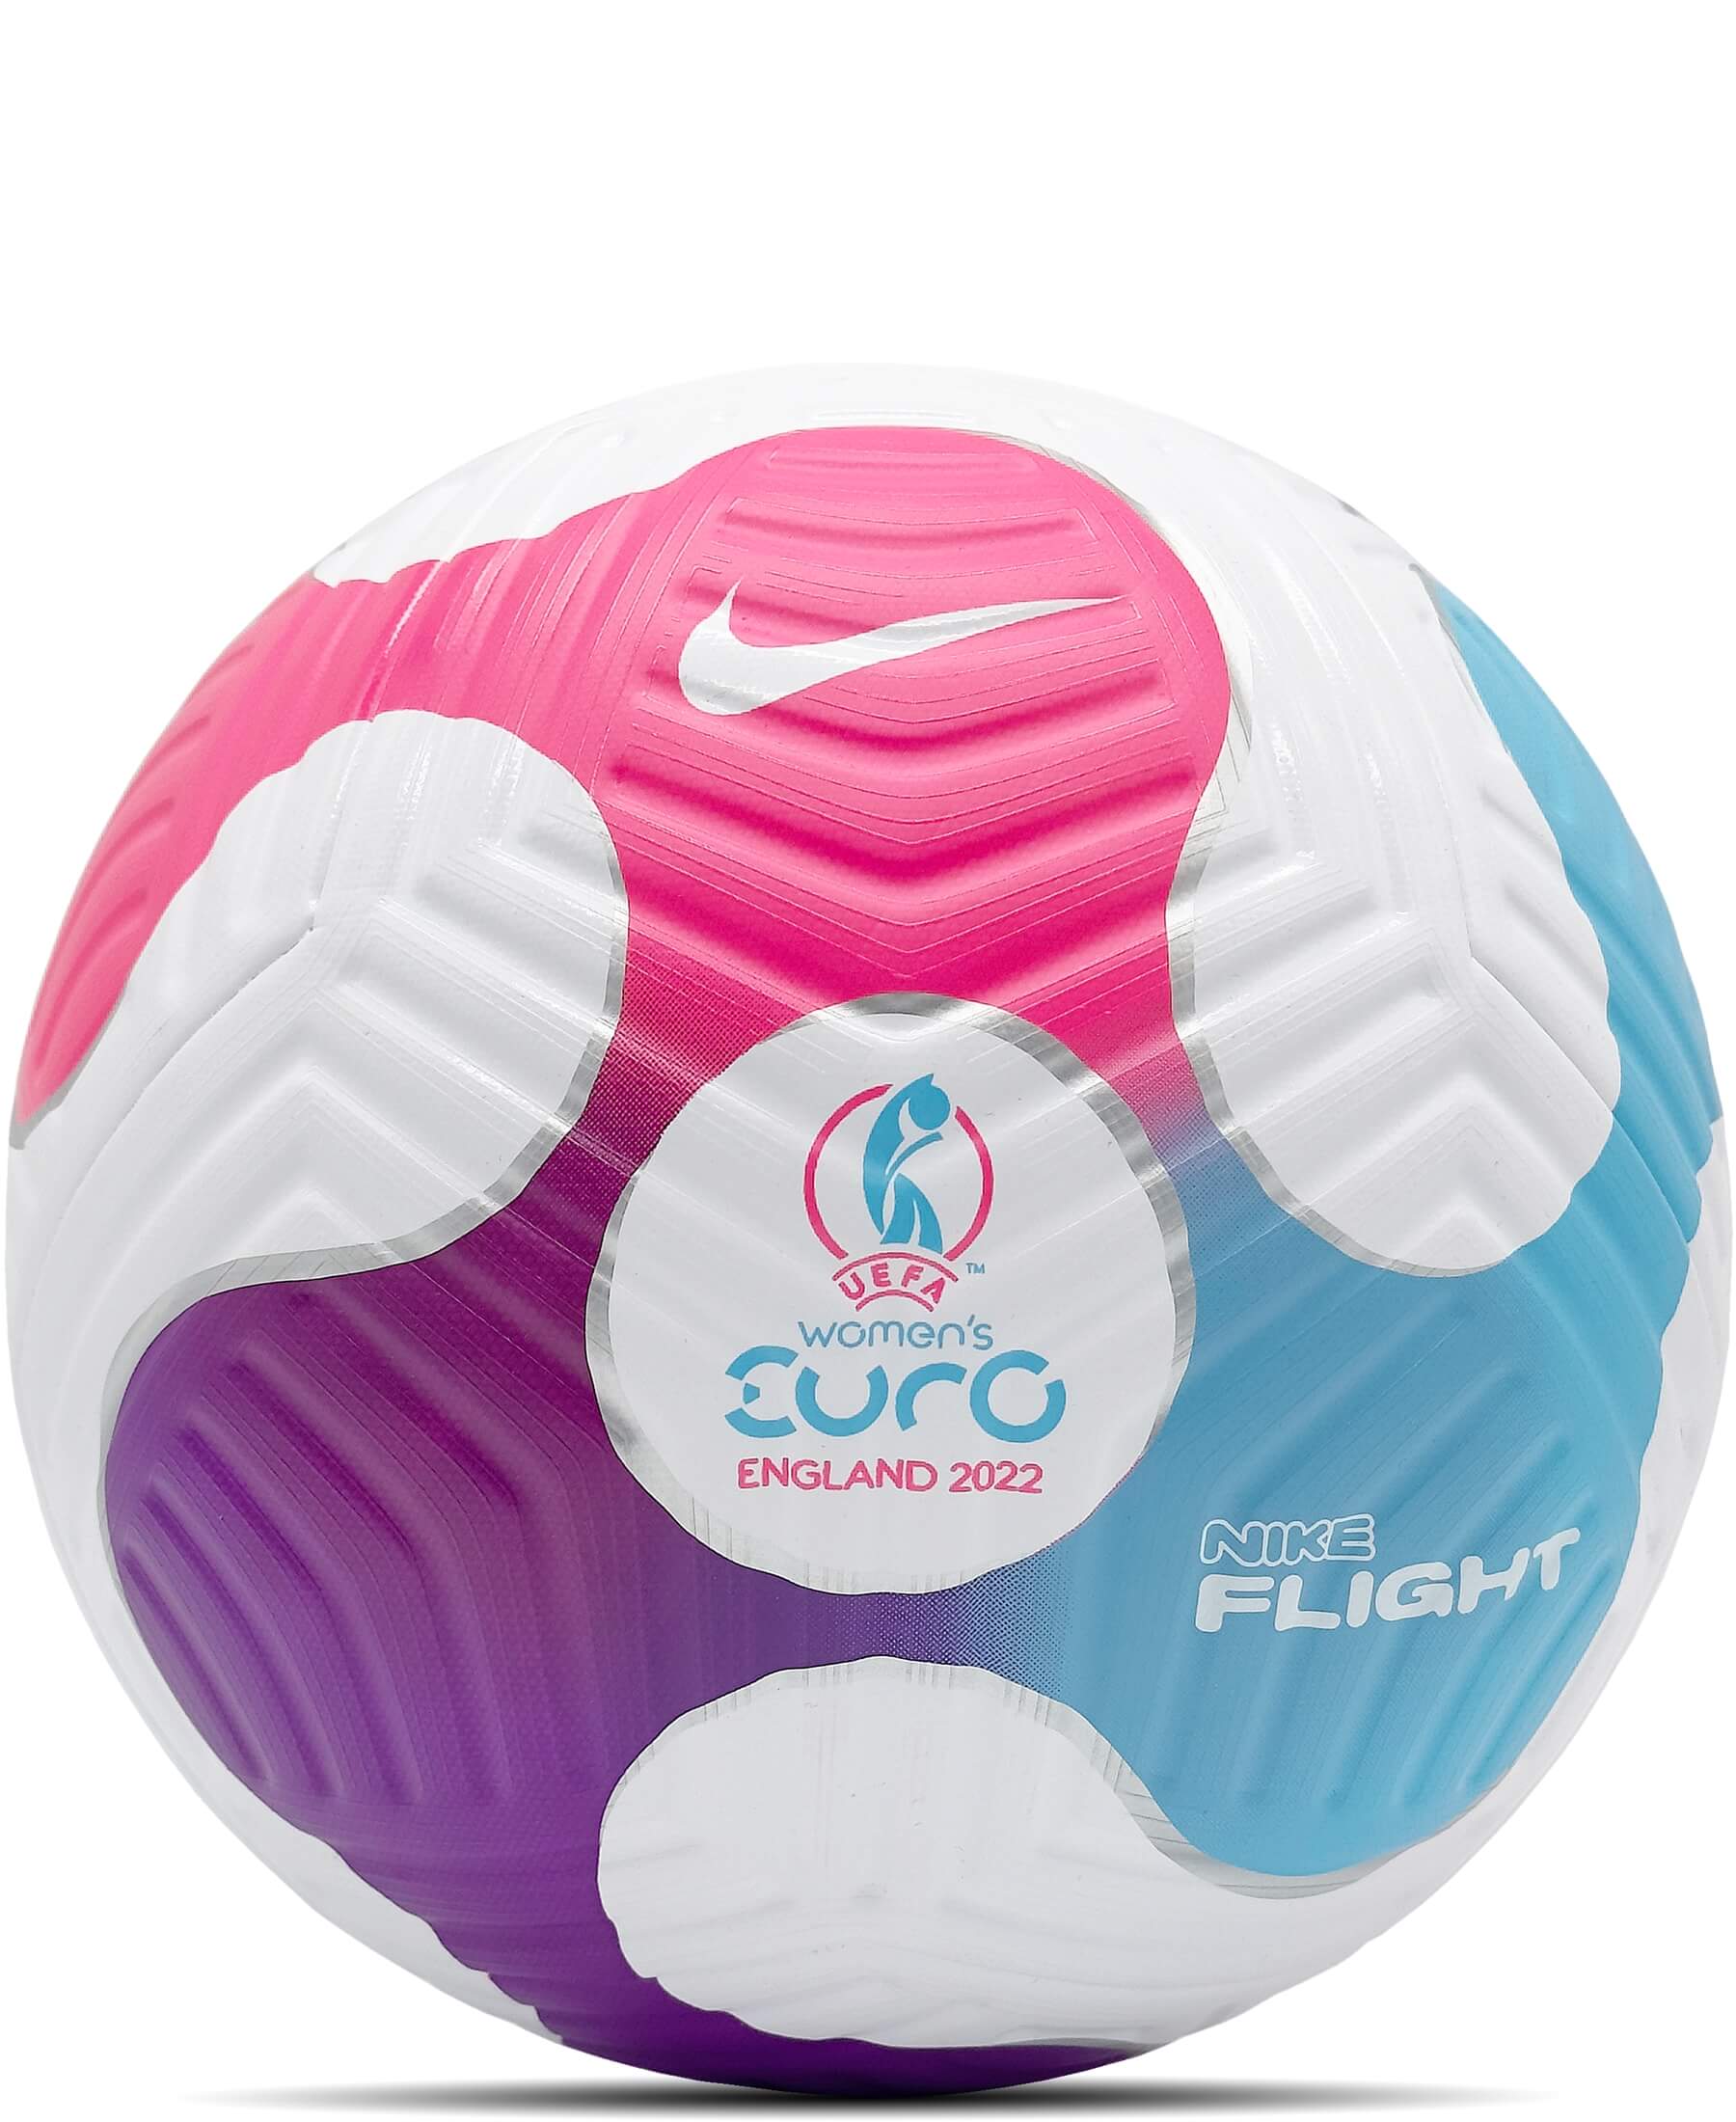 Nike Official Match Ball Flight OMB Spielball UEFA Frauen EM 2022 DA2616-100: Offizieller Spielball der UEFA Frauen-Europameisterschaft 2022. Hochwertiger Matchball für präzises Spiel. Jetzt erhältlich im Onlineshop SHOP4TEAMSPORT. Sichere dir diesen exklusiven Ball und erlebe das Fußballspiel auf höchstem Niveau.